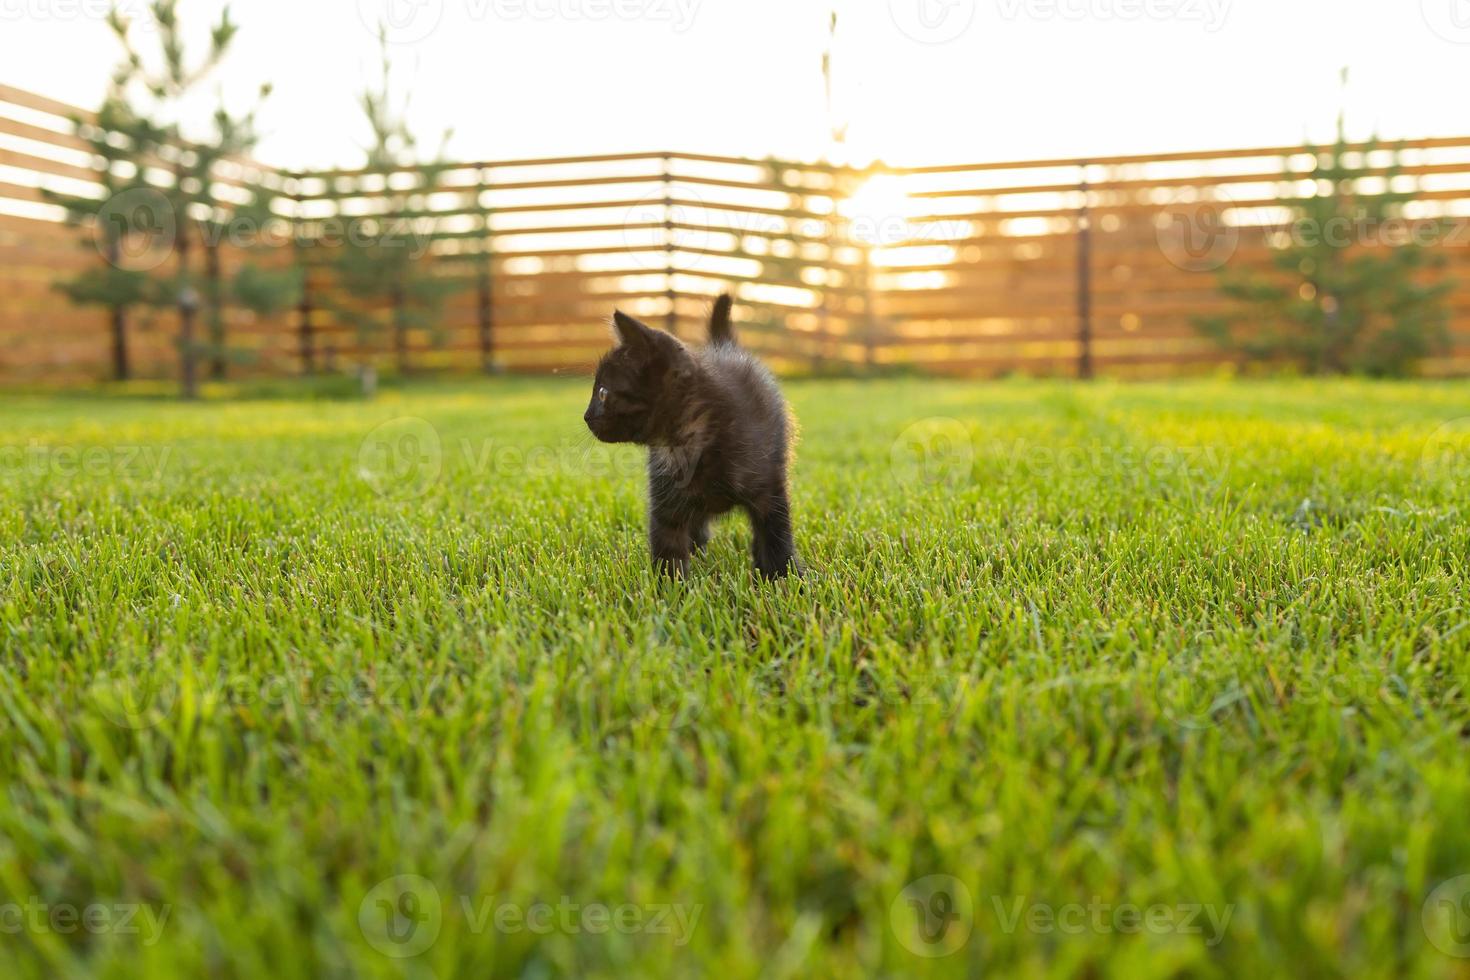 zwart merkwaardig katje buitenshuis in de gras - huisdier en huiselijk kat concept. kopiëren ruimte en plaats voor reclame foto